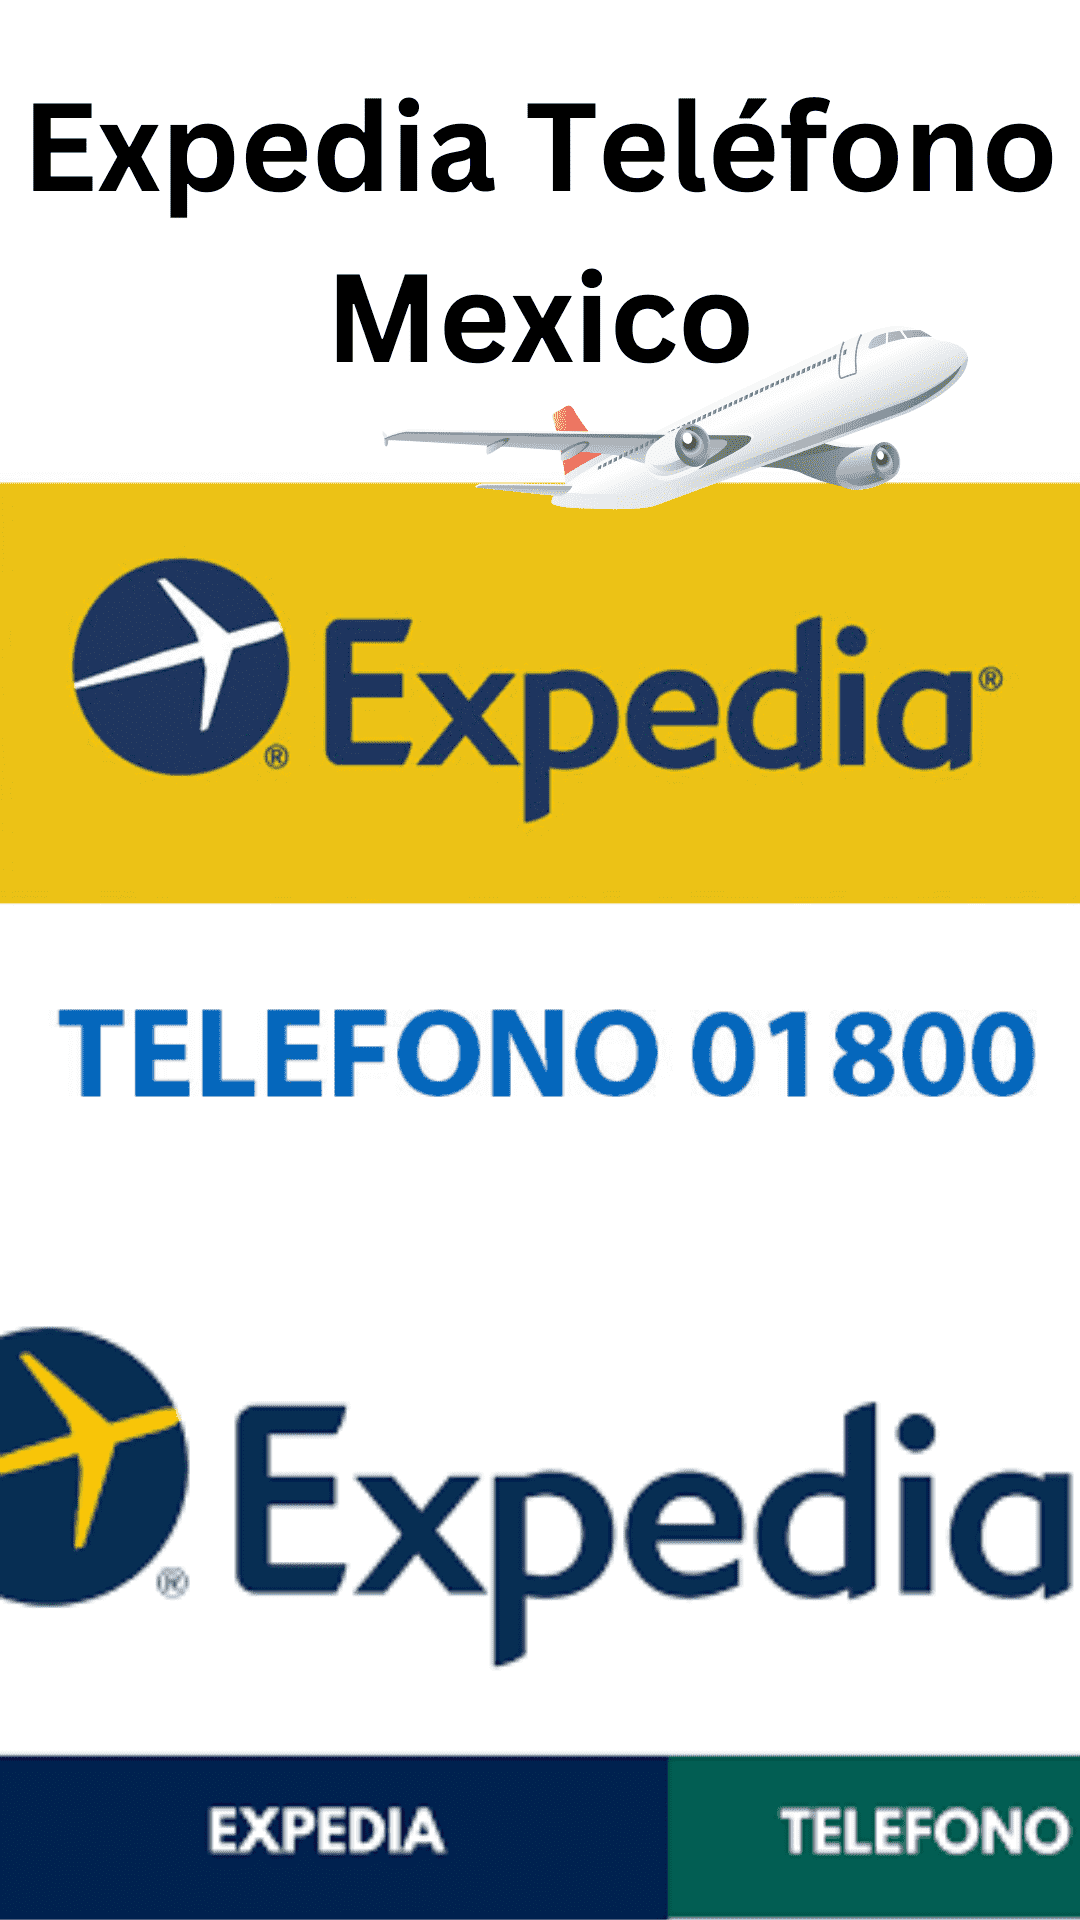 Expedia Telefono Mexico